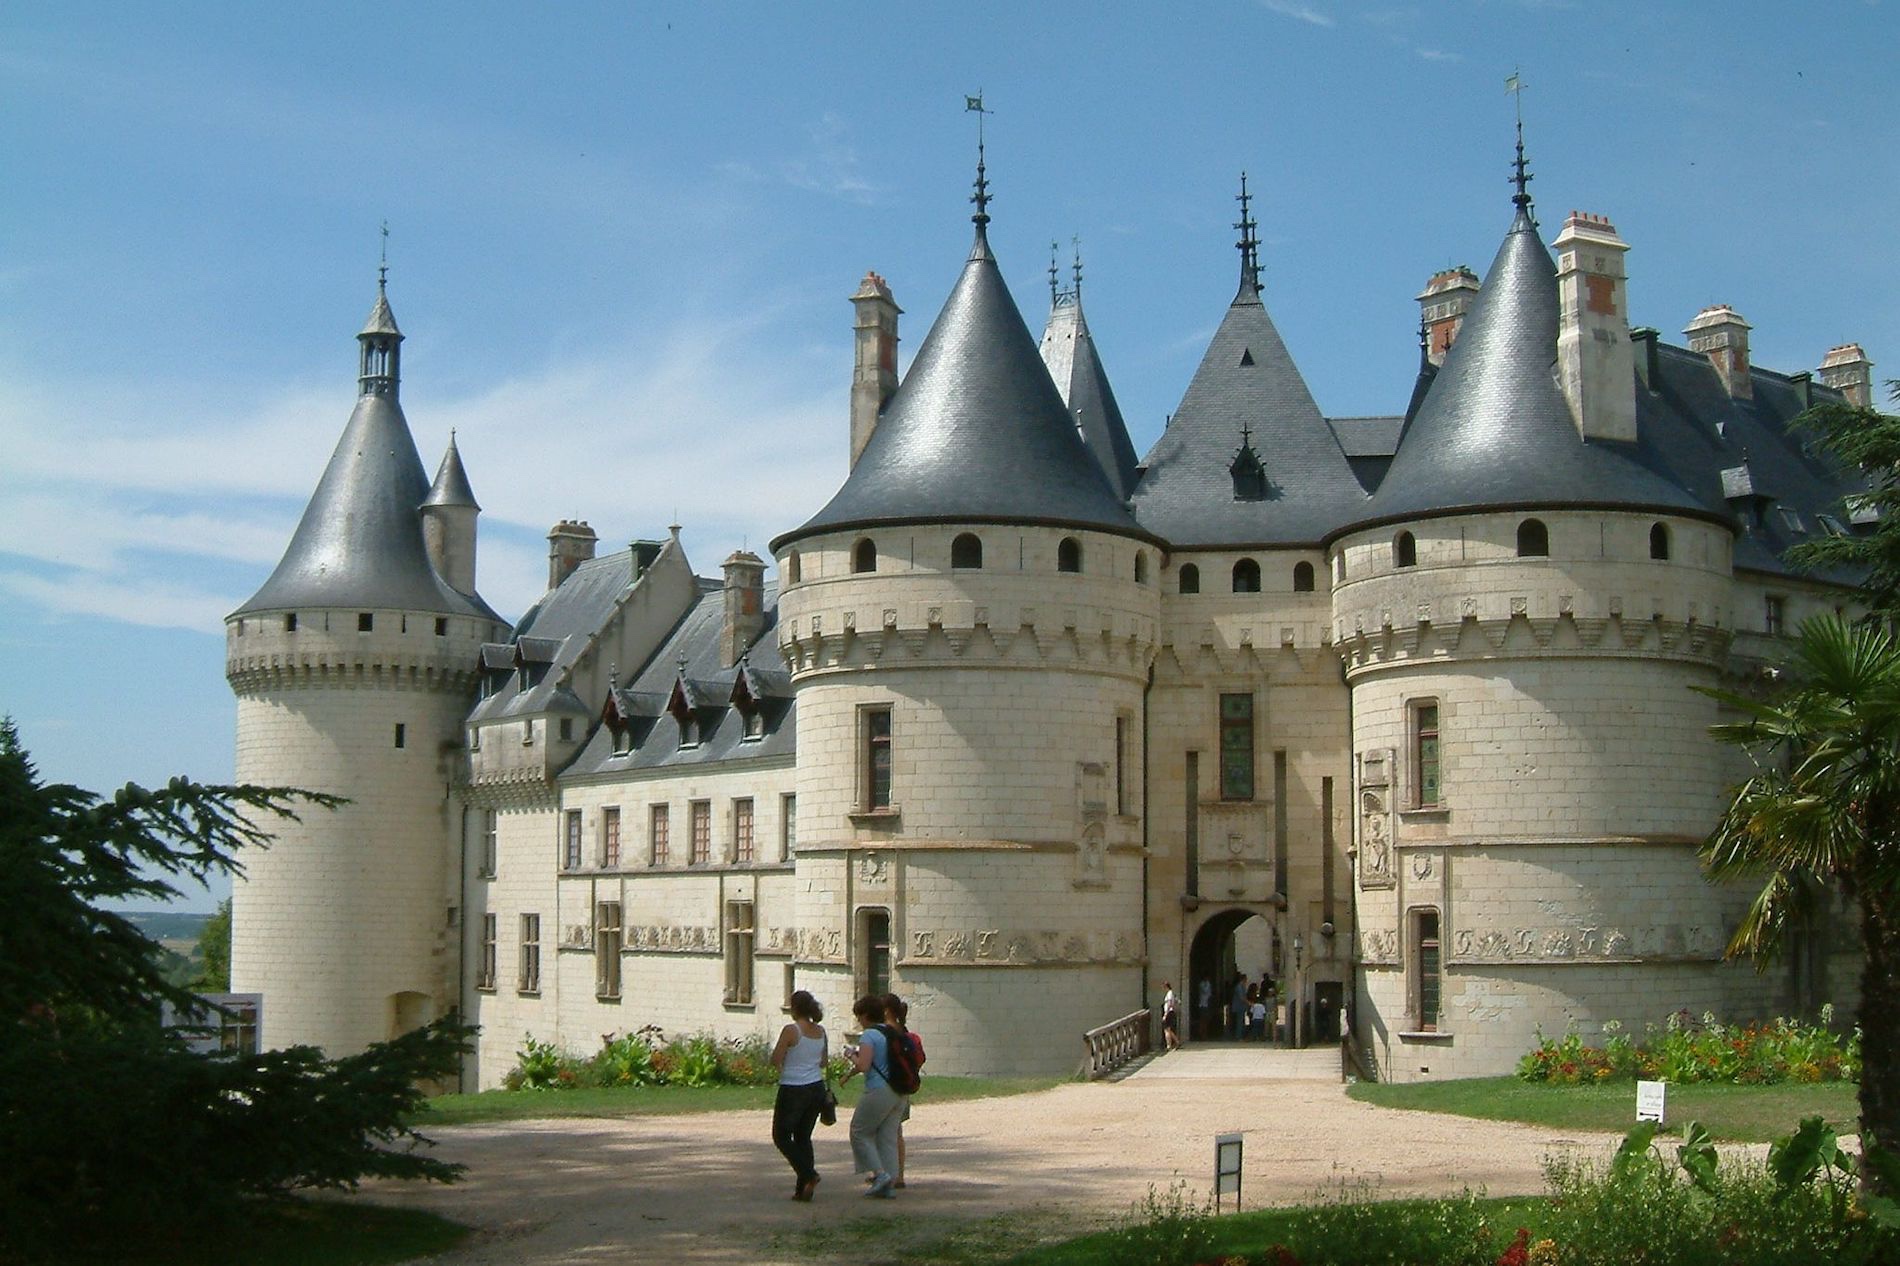  Chaumont sur Loire Chateau 